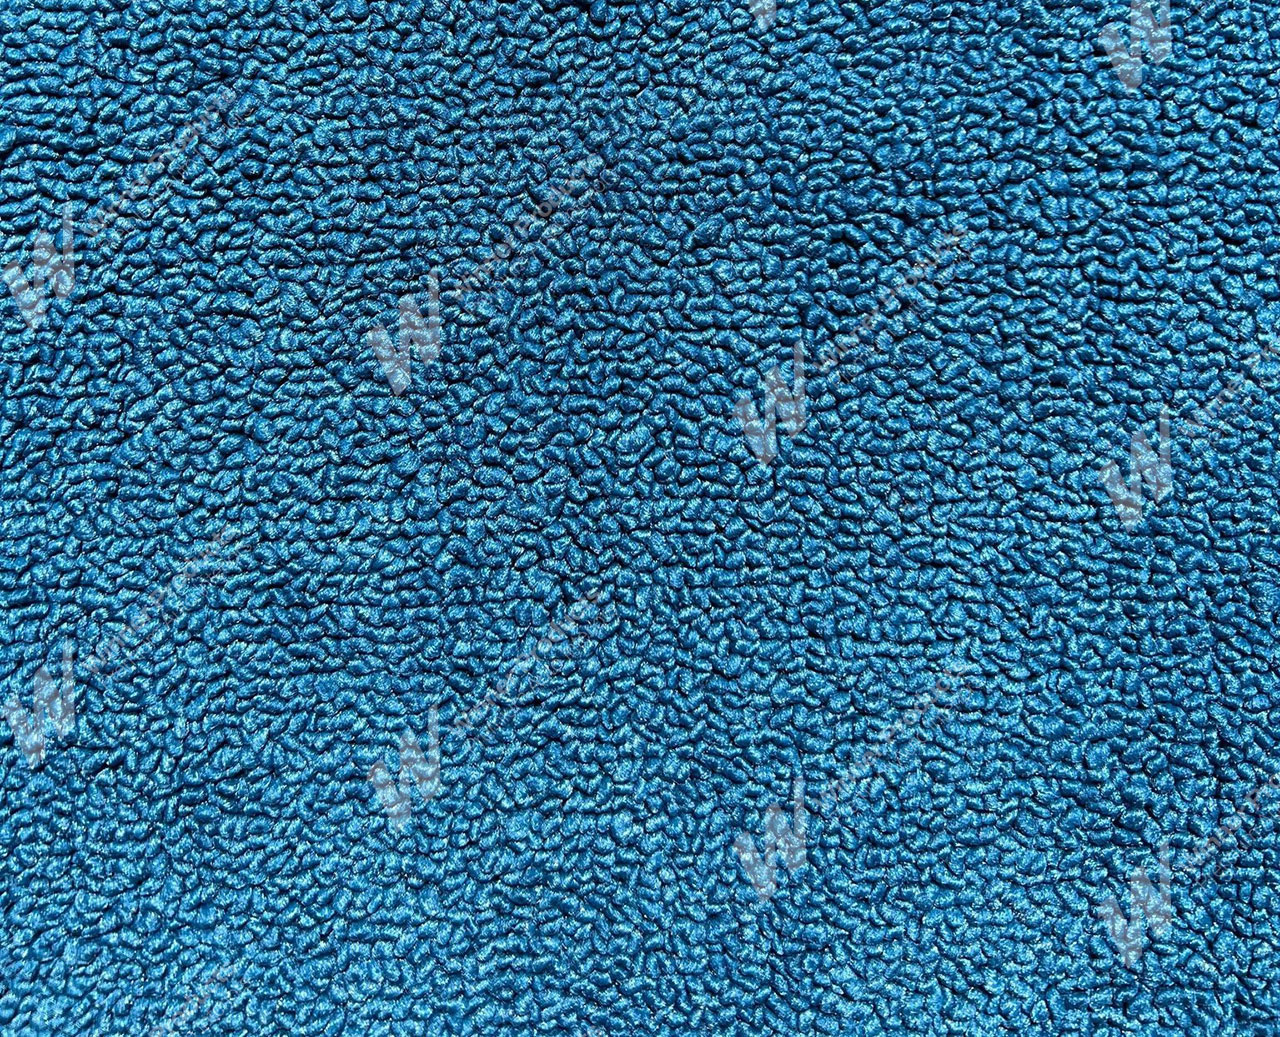 Holden Kingswood HZ Kingswood Ute 23C Light Blue Carpet (Image 1 of 1)